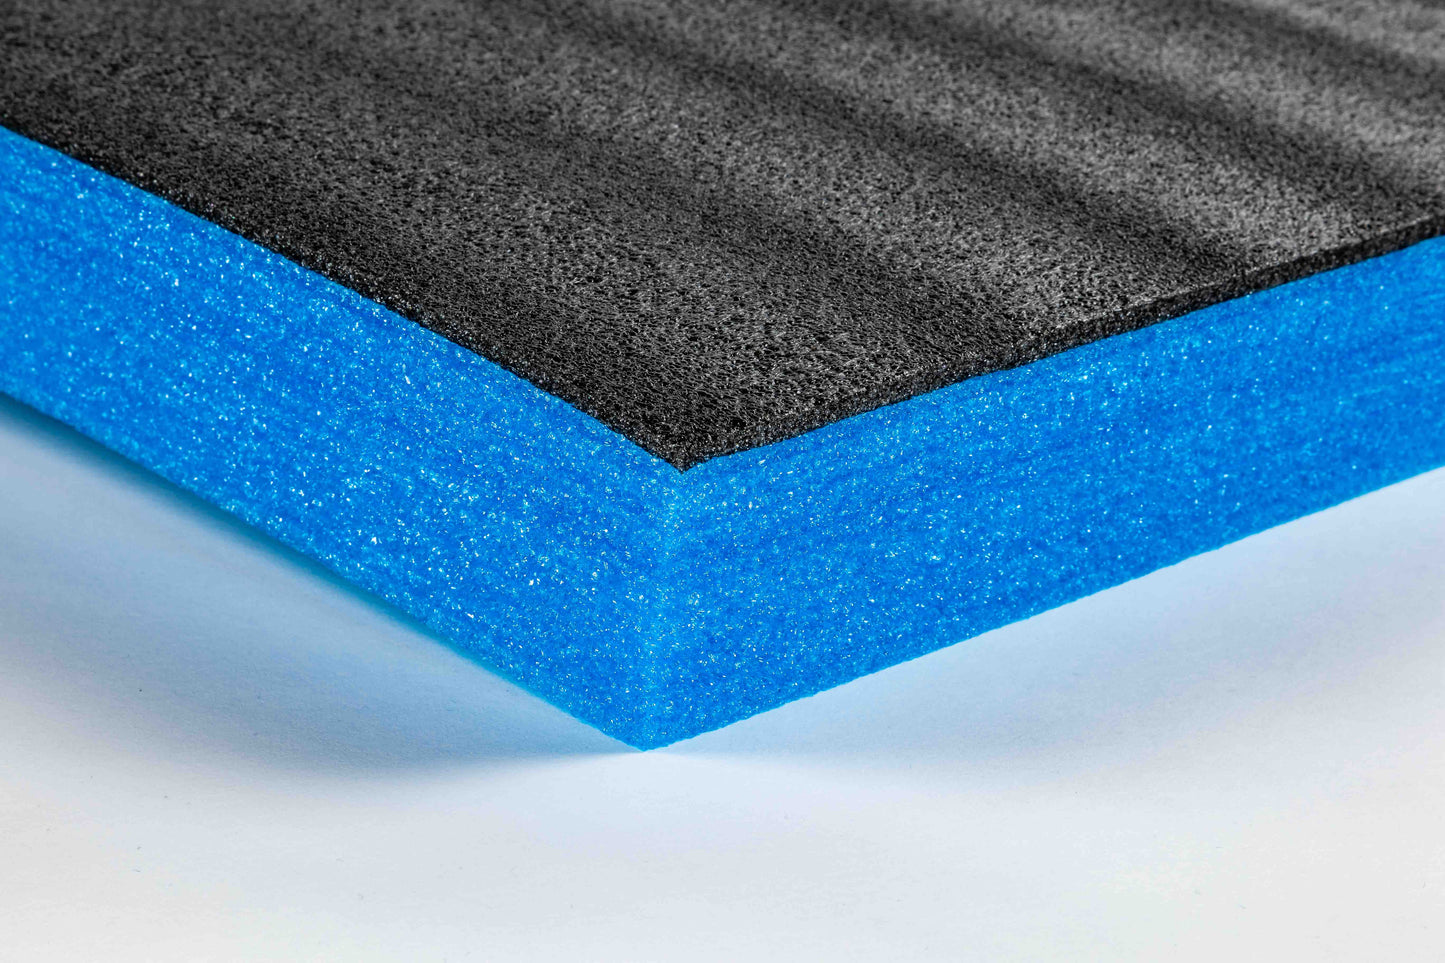 TYGR Foam Schaumstoffeinlagen 600x600x70 blau im Detail